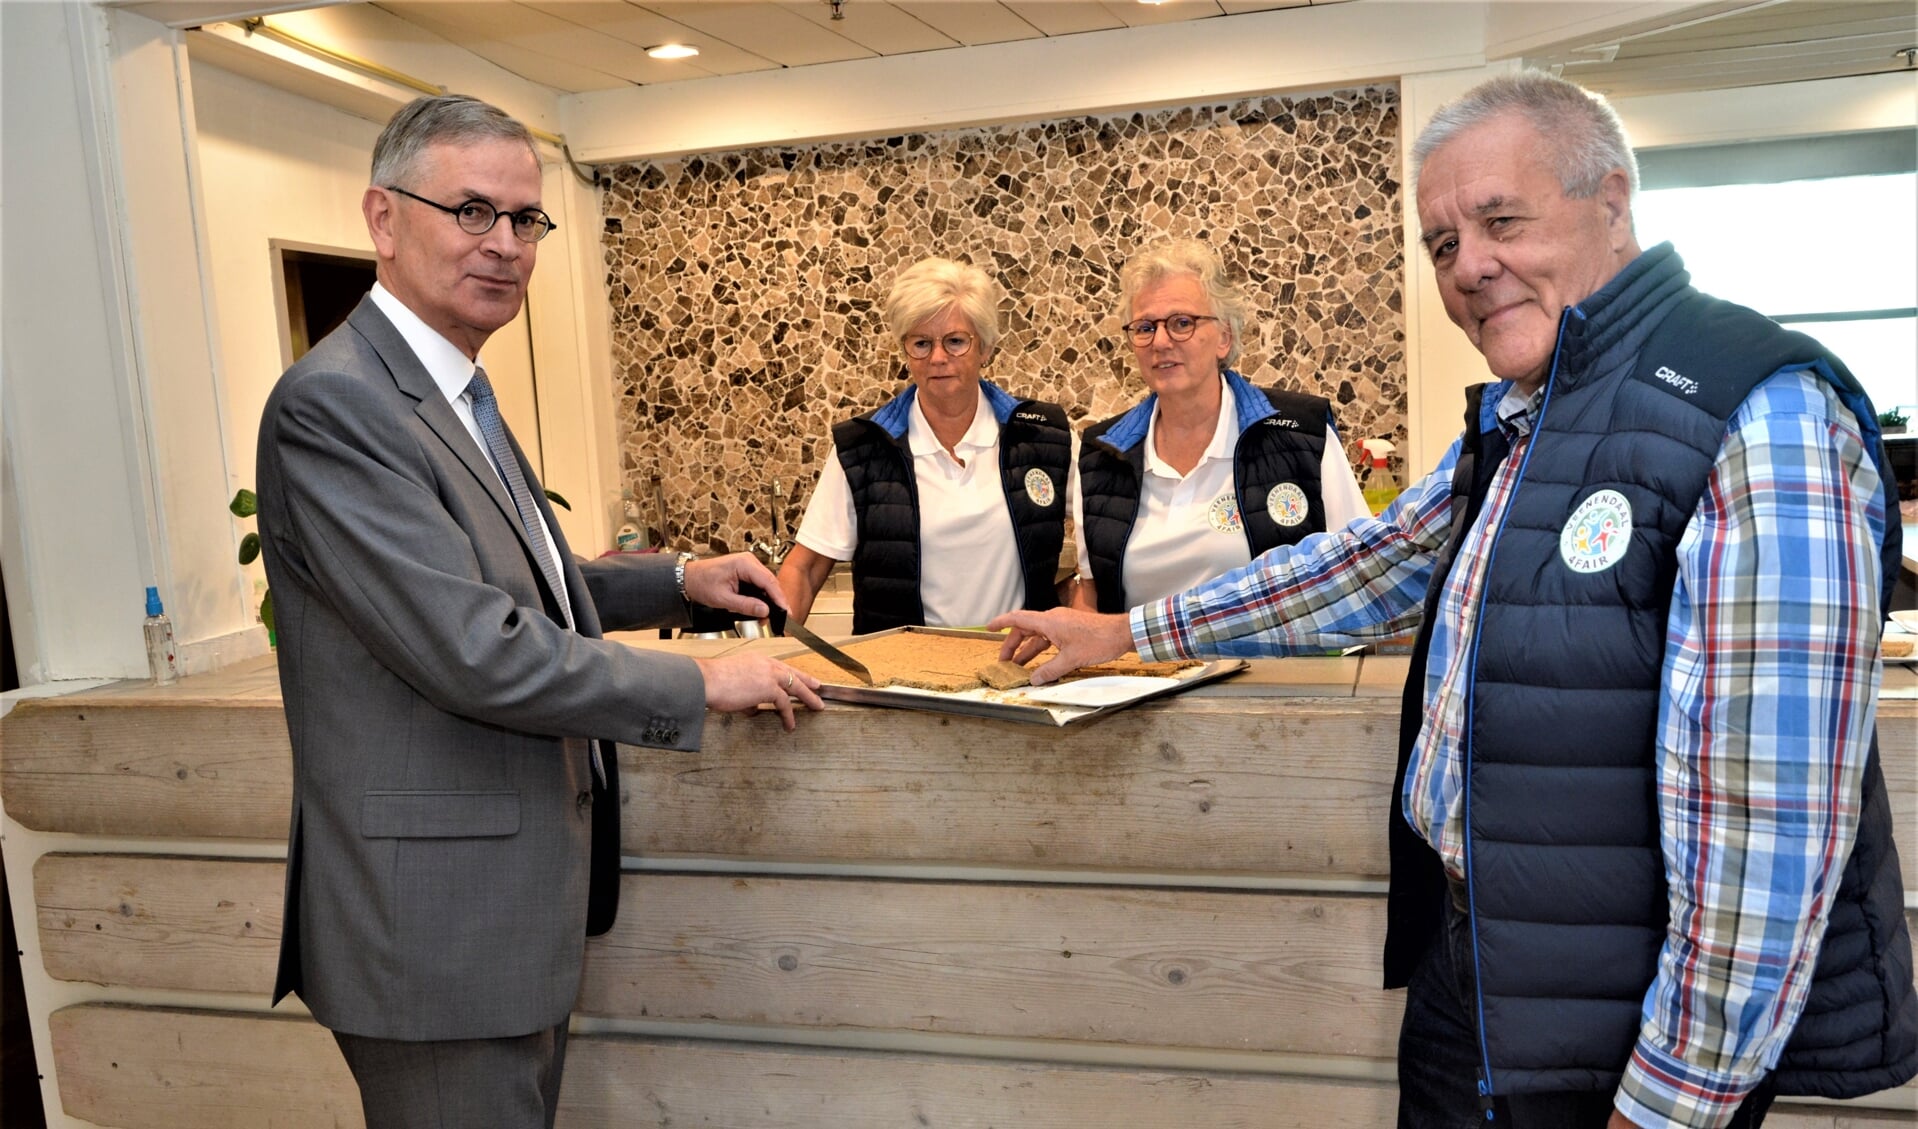 Wethouder Marco Verloop sneed de Veenendaalse Bierborselkoek aan tijdens zijn bezoek.